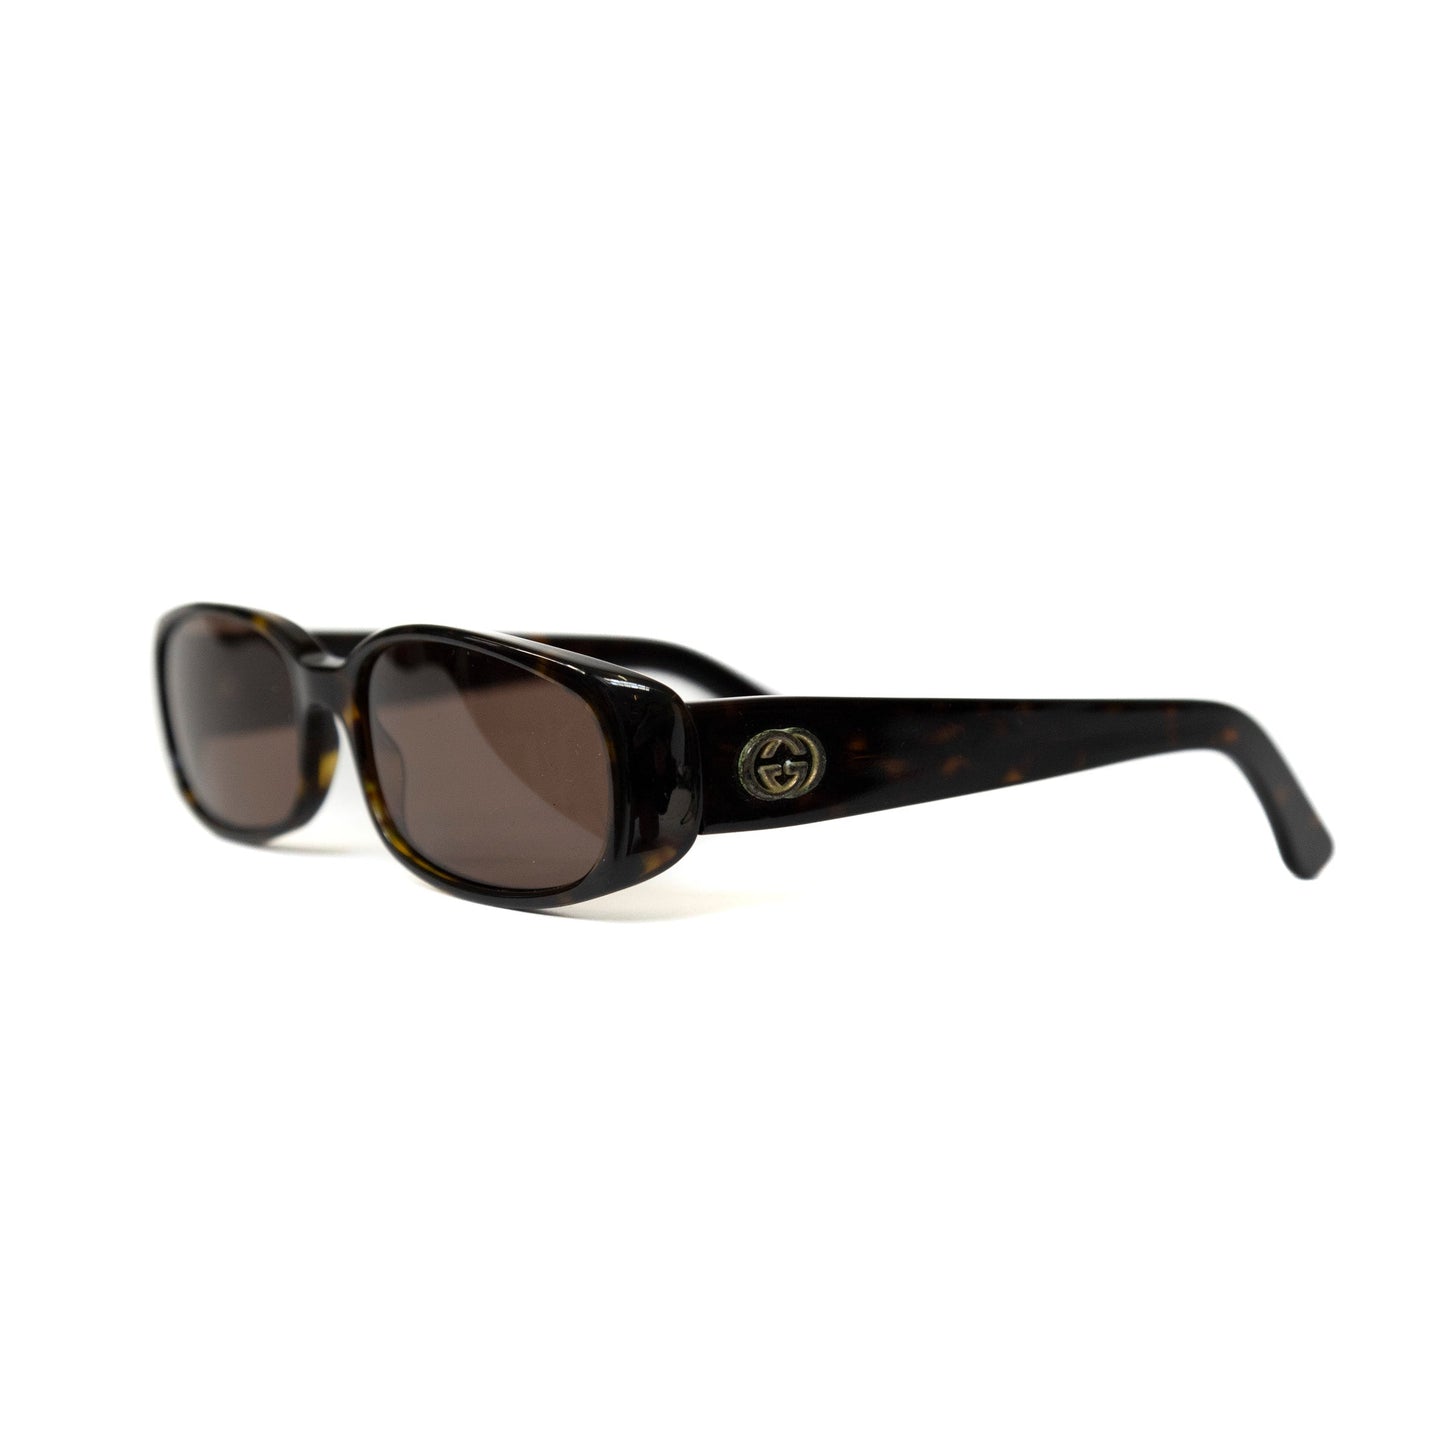 Gucci Brown Oval Sunglasses